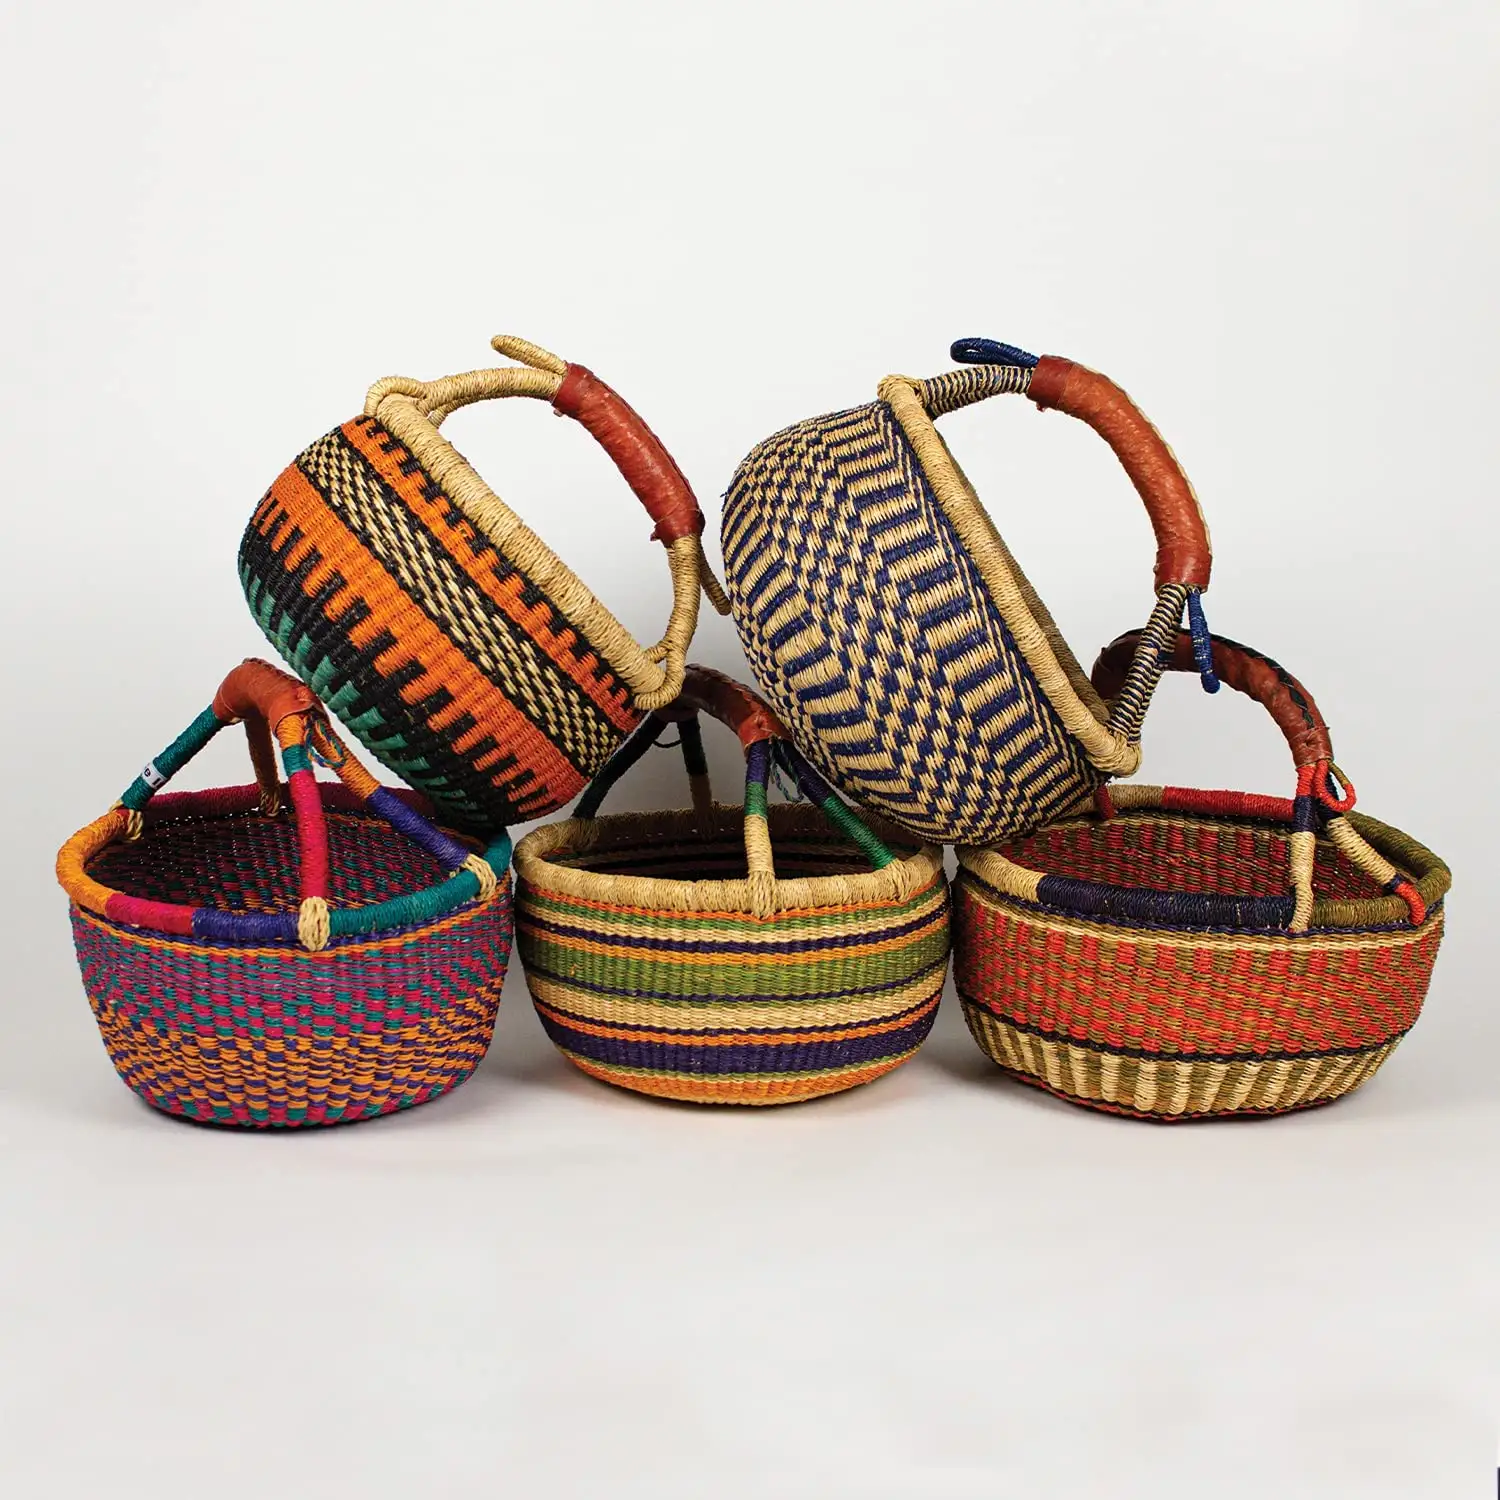 حقائب يد نسائية صناعة يدوية, حقائب يد نسائية دائرية مصنوعة يدويًا على الطراز الأفريقي ، سلال بولغا ملونة من نسيج غانا ، حقائب حمل أفريقية